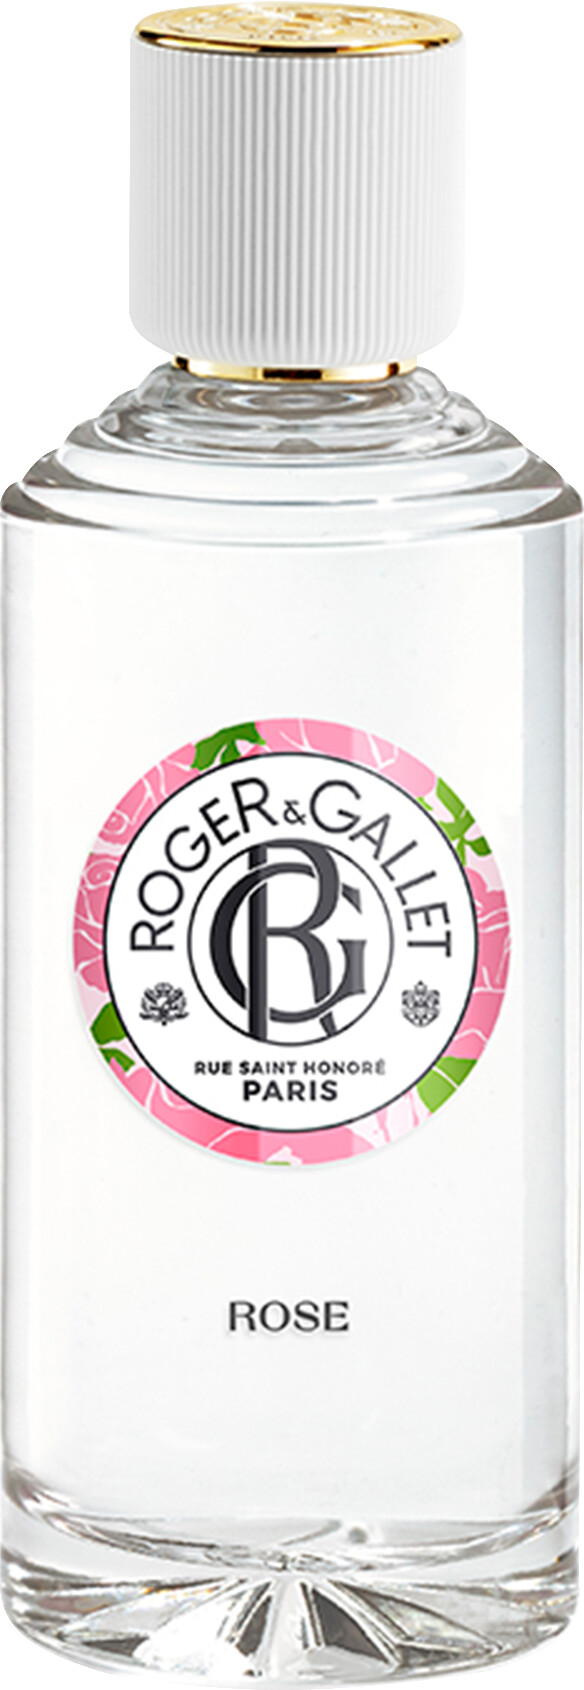 Roger & Gallet Rose Gentle Fragrant Water